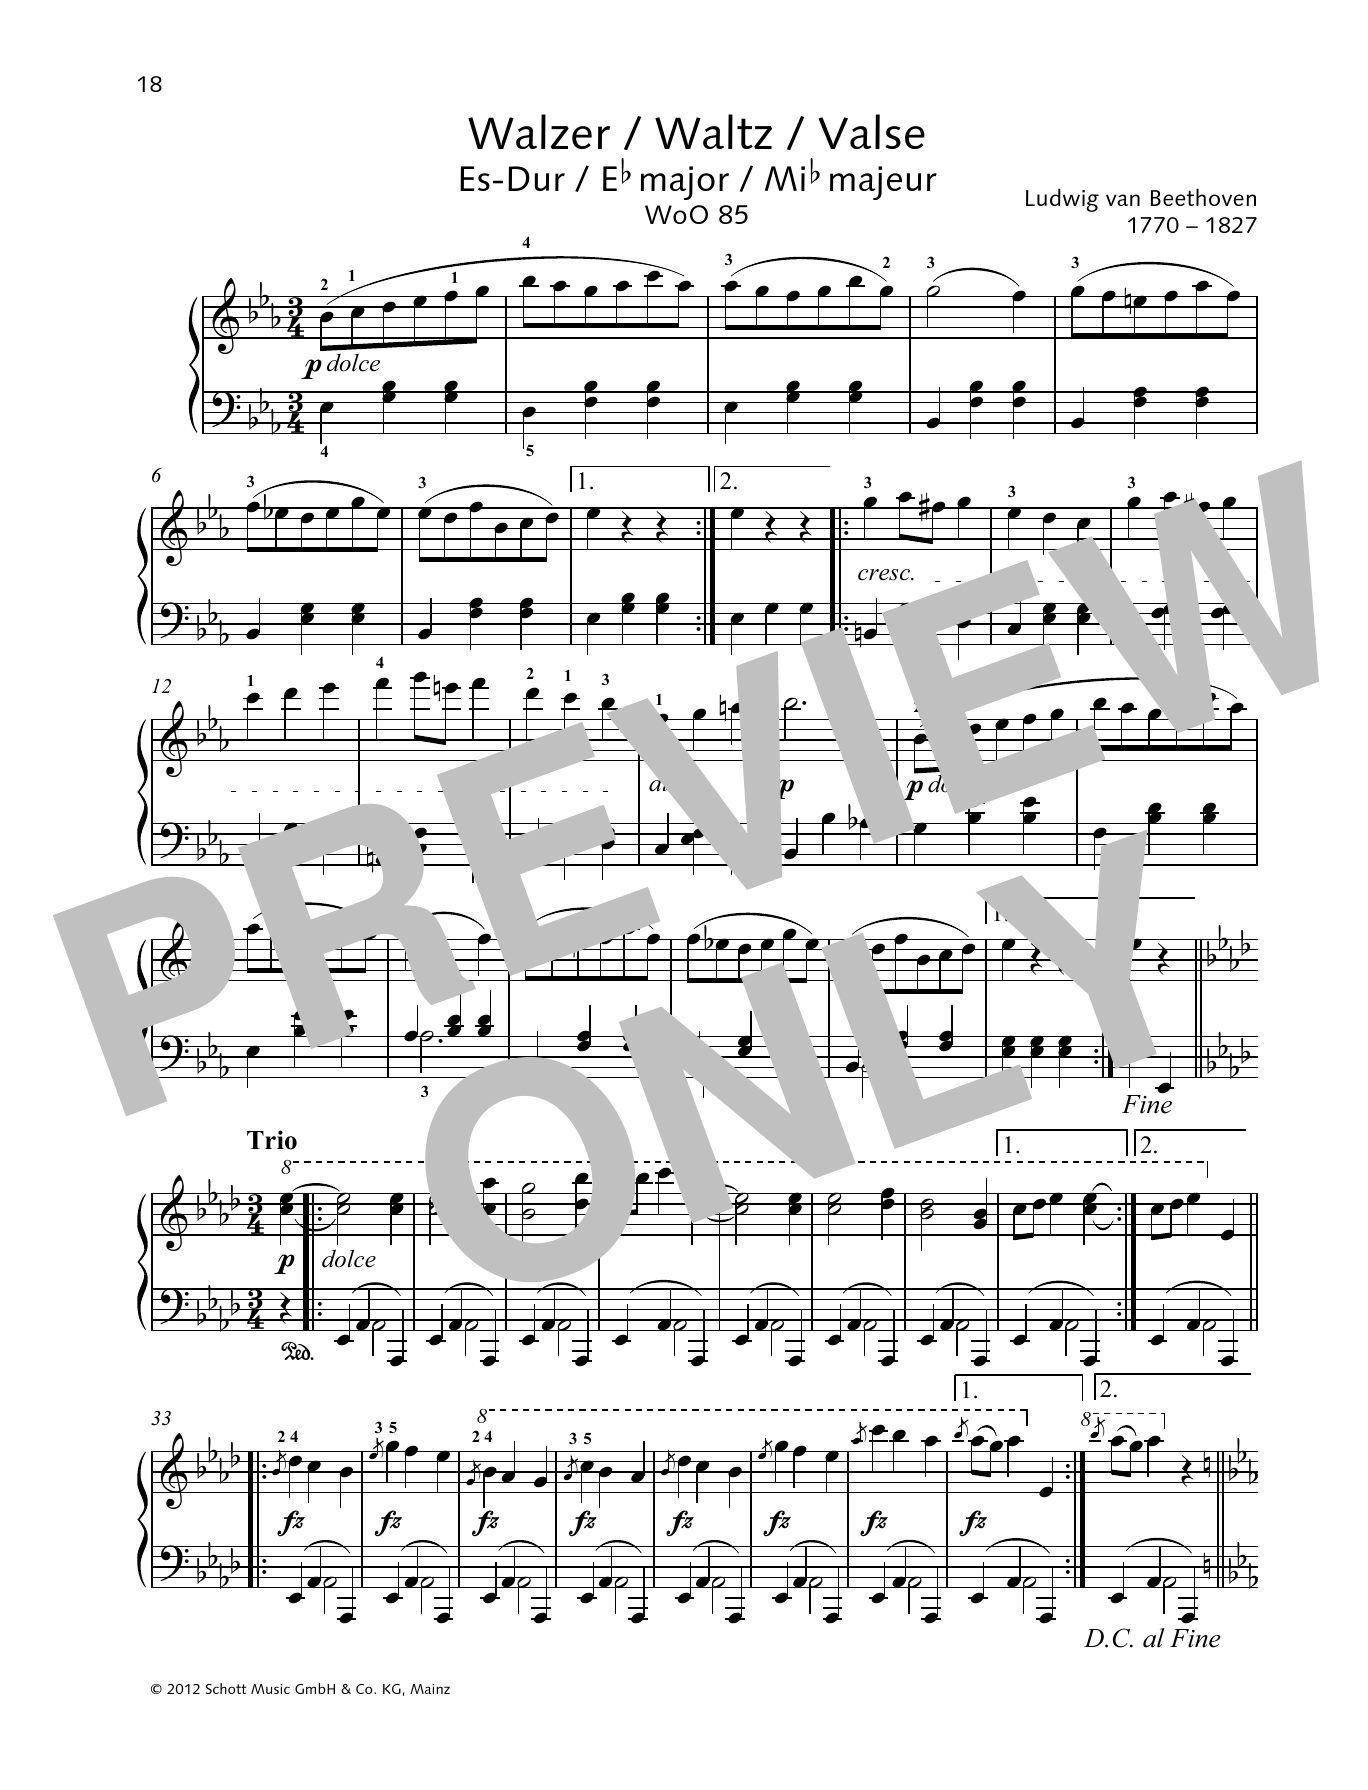 Waltz E-flat major (Piano Solo) von Ludwig van Beethoven